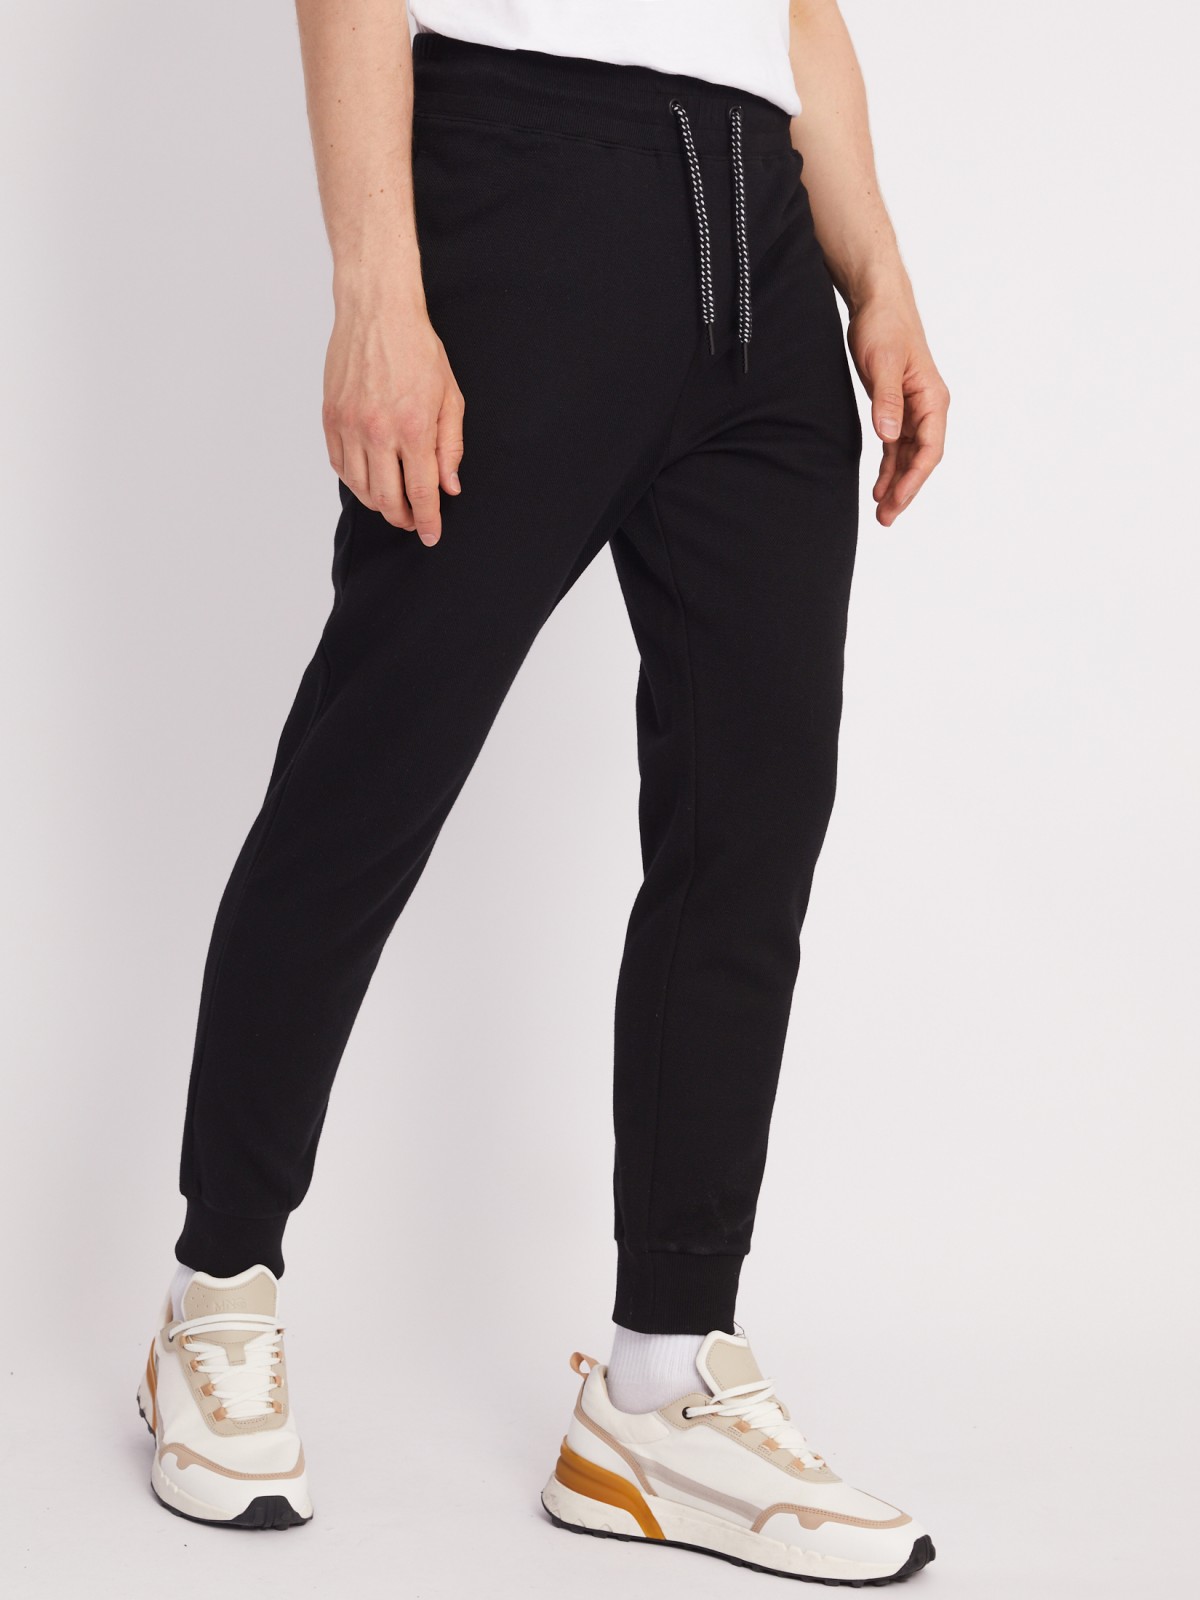 Трикотажные брюки-джоггеры в спортивном стиле zolla 21331762F012, цвет черный, размер M - фото 4